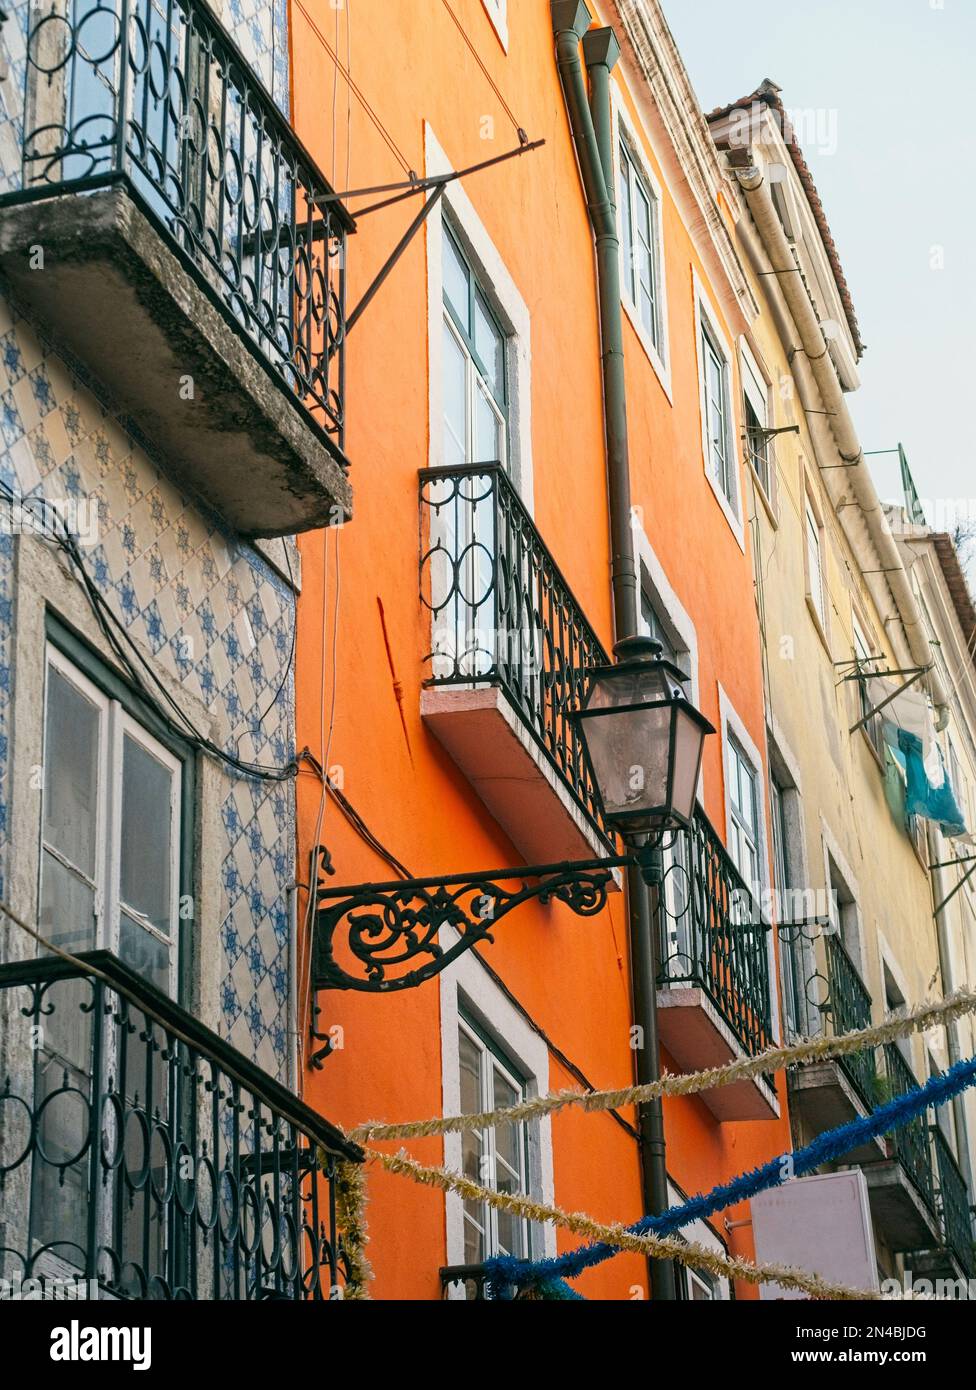 DE LUNARES Y NARANJAS: Cómo pintar los azulejos de tu terraza